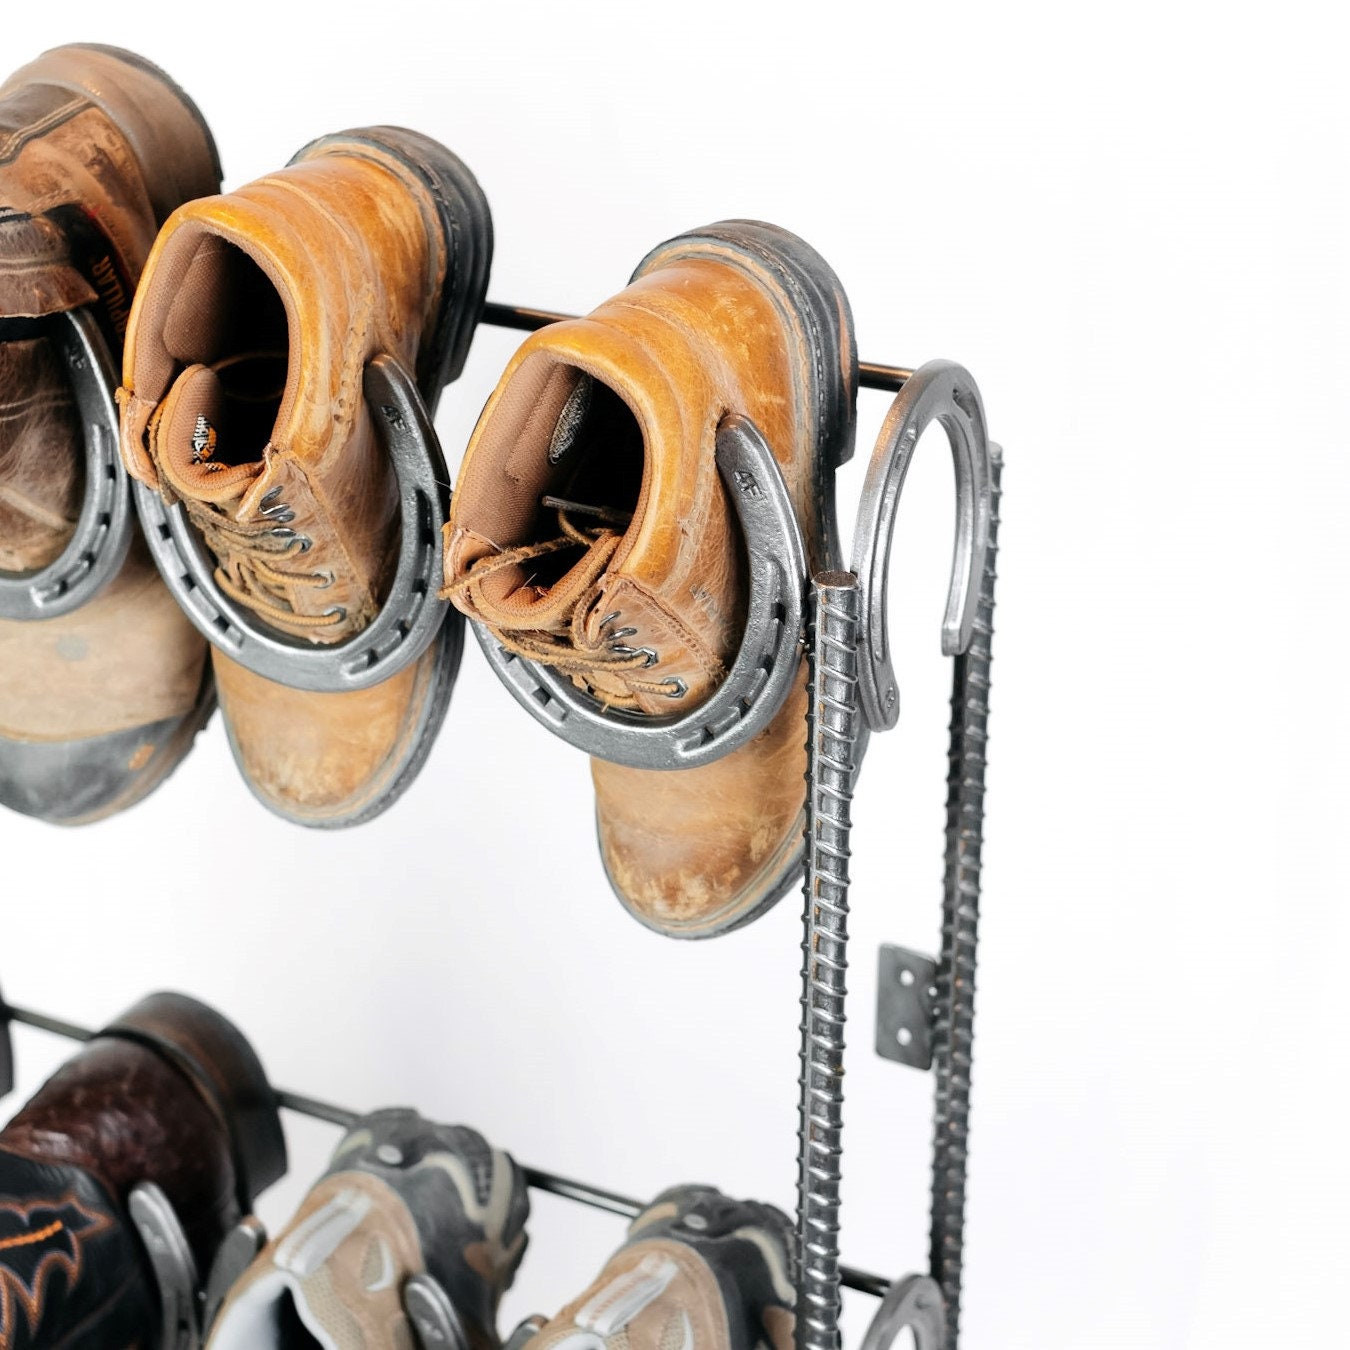 100% Used Horseshoe Boot Rack Shoe Organizer